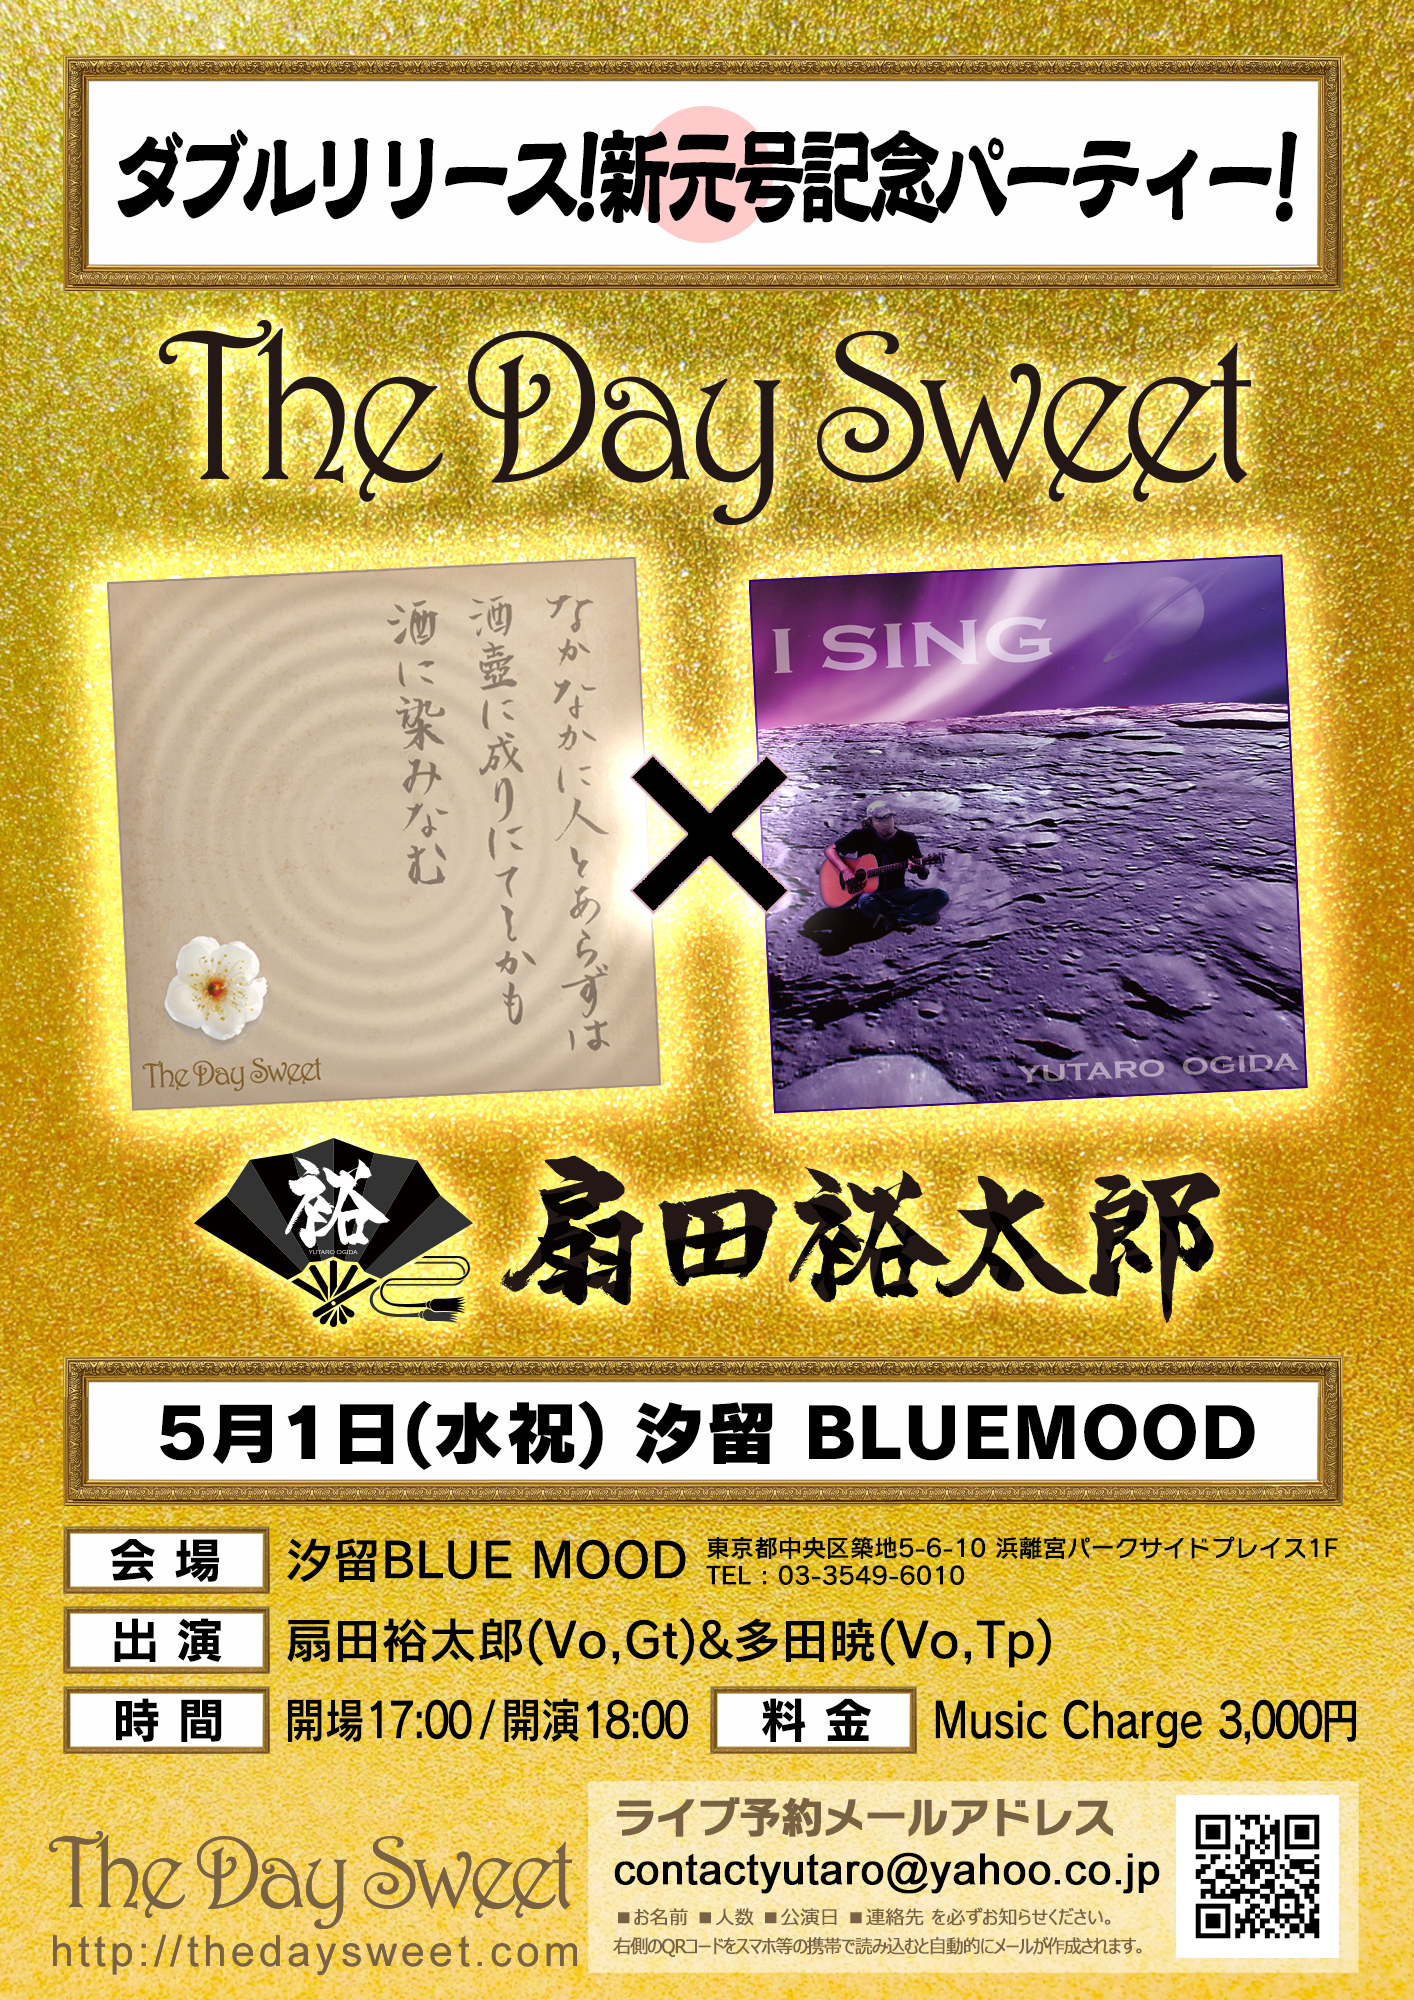 The Day Sweet×扇田裕太郎ダブルリリース!新元号記念パーティー!